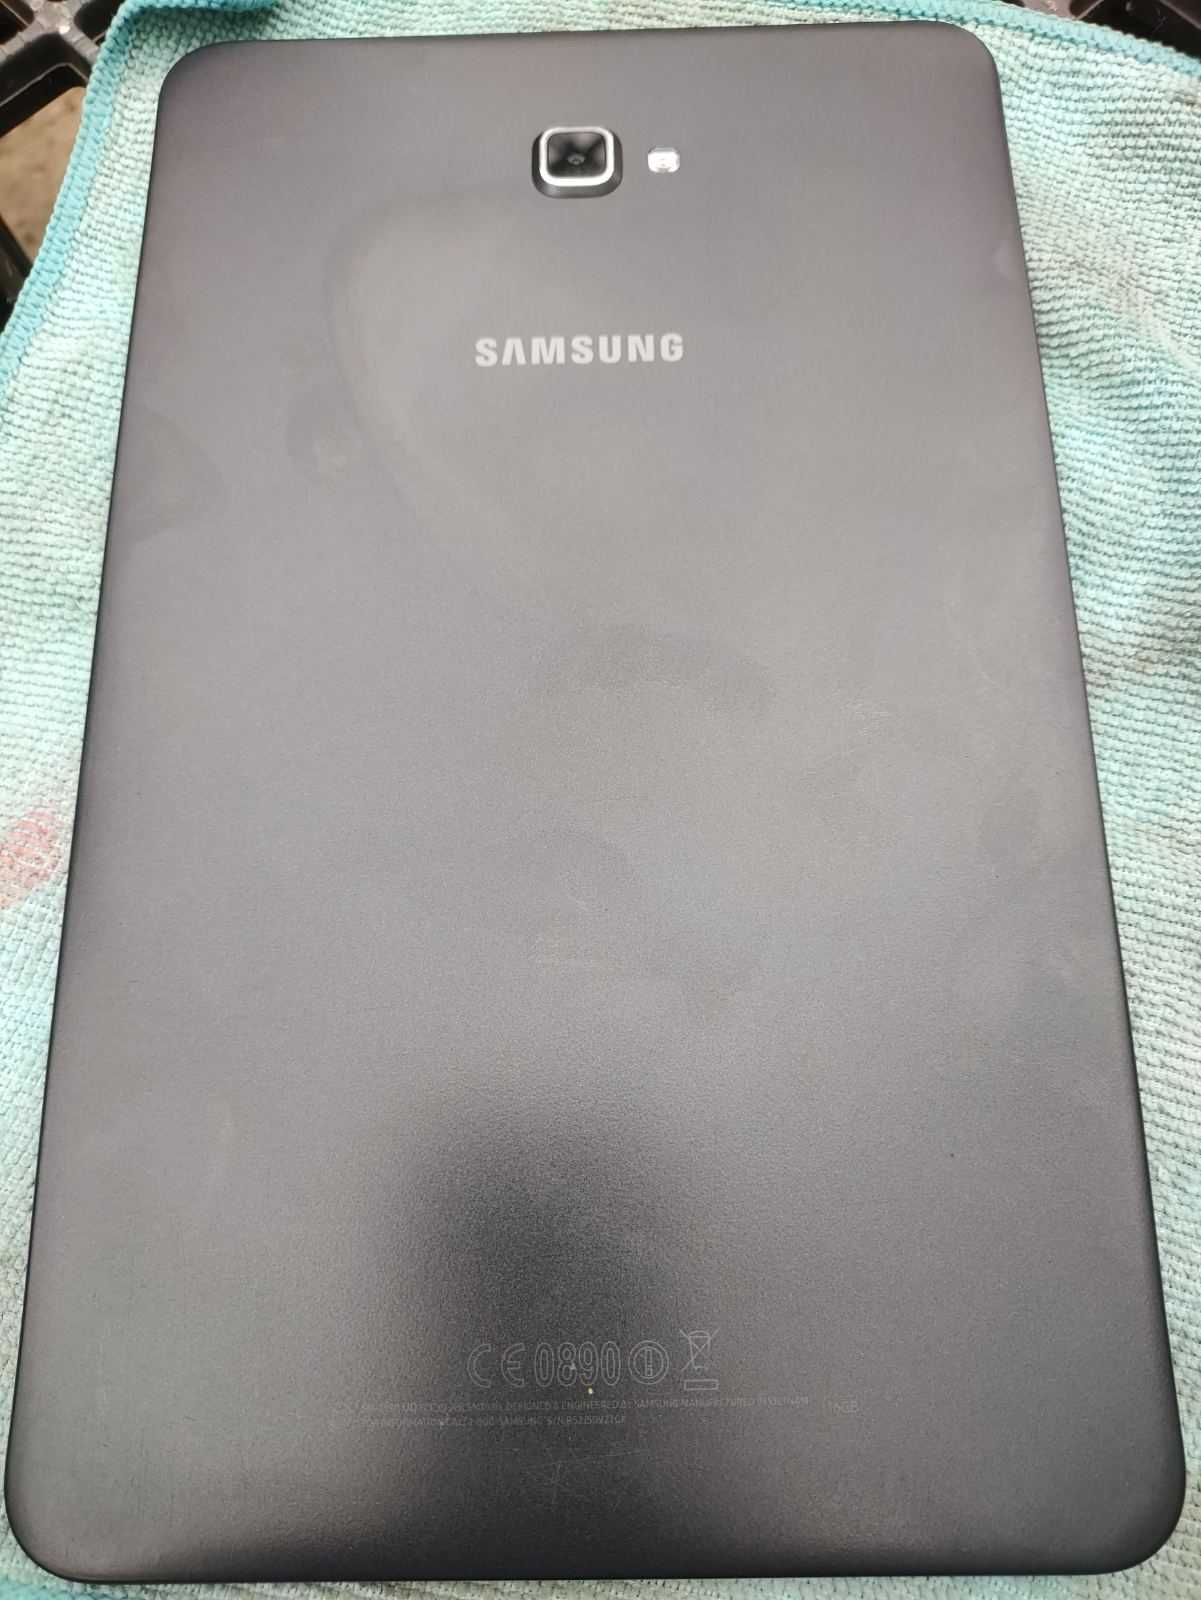 Samsung Galaxy Tab A SM-T580 10.1" 16GB Планшет